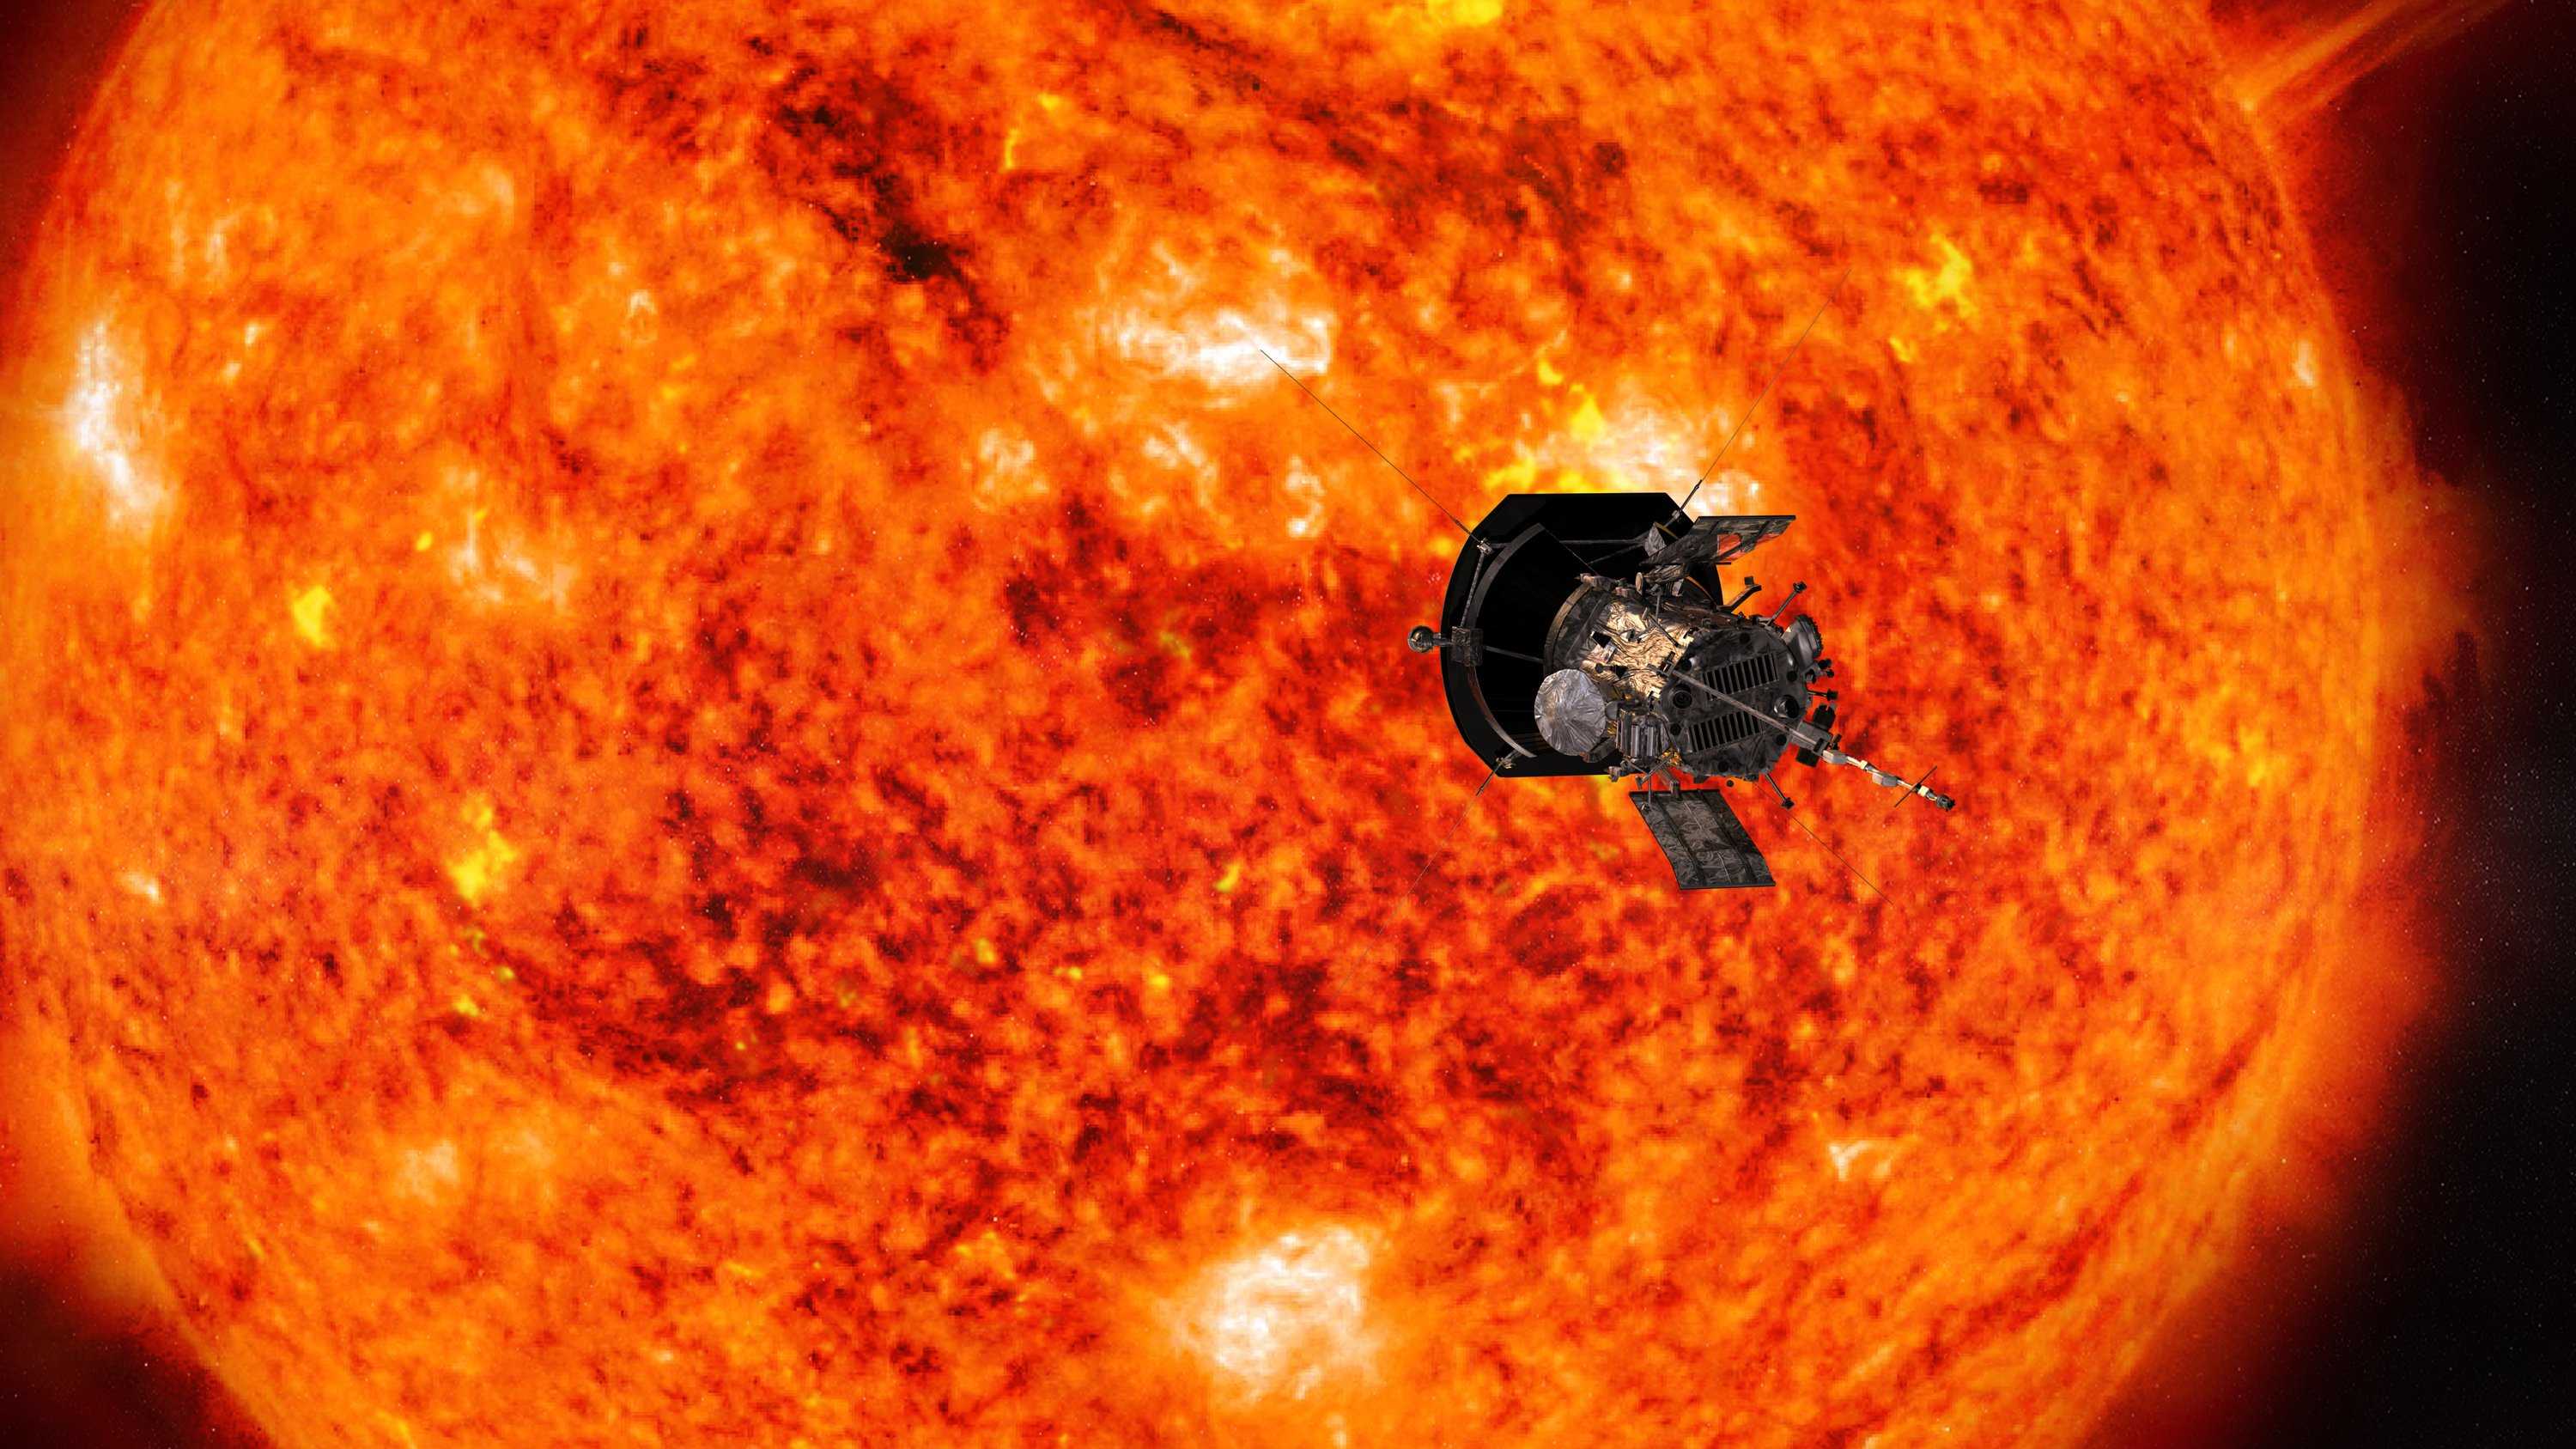 Солнечный зонд Parker установил новые рекорды